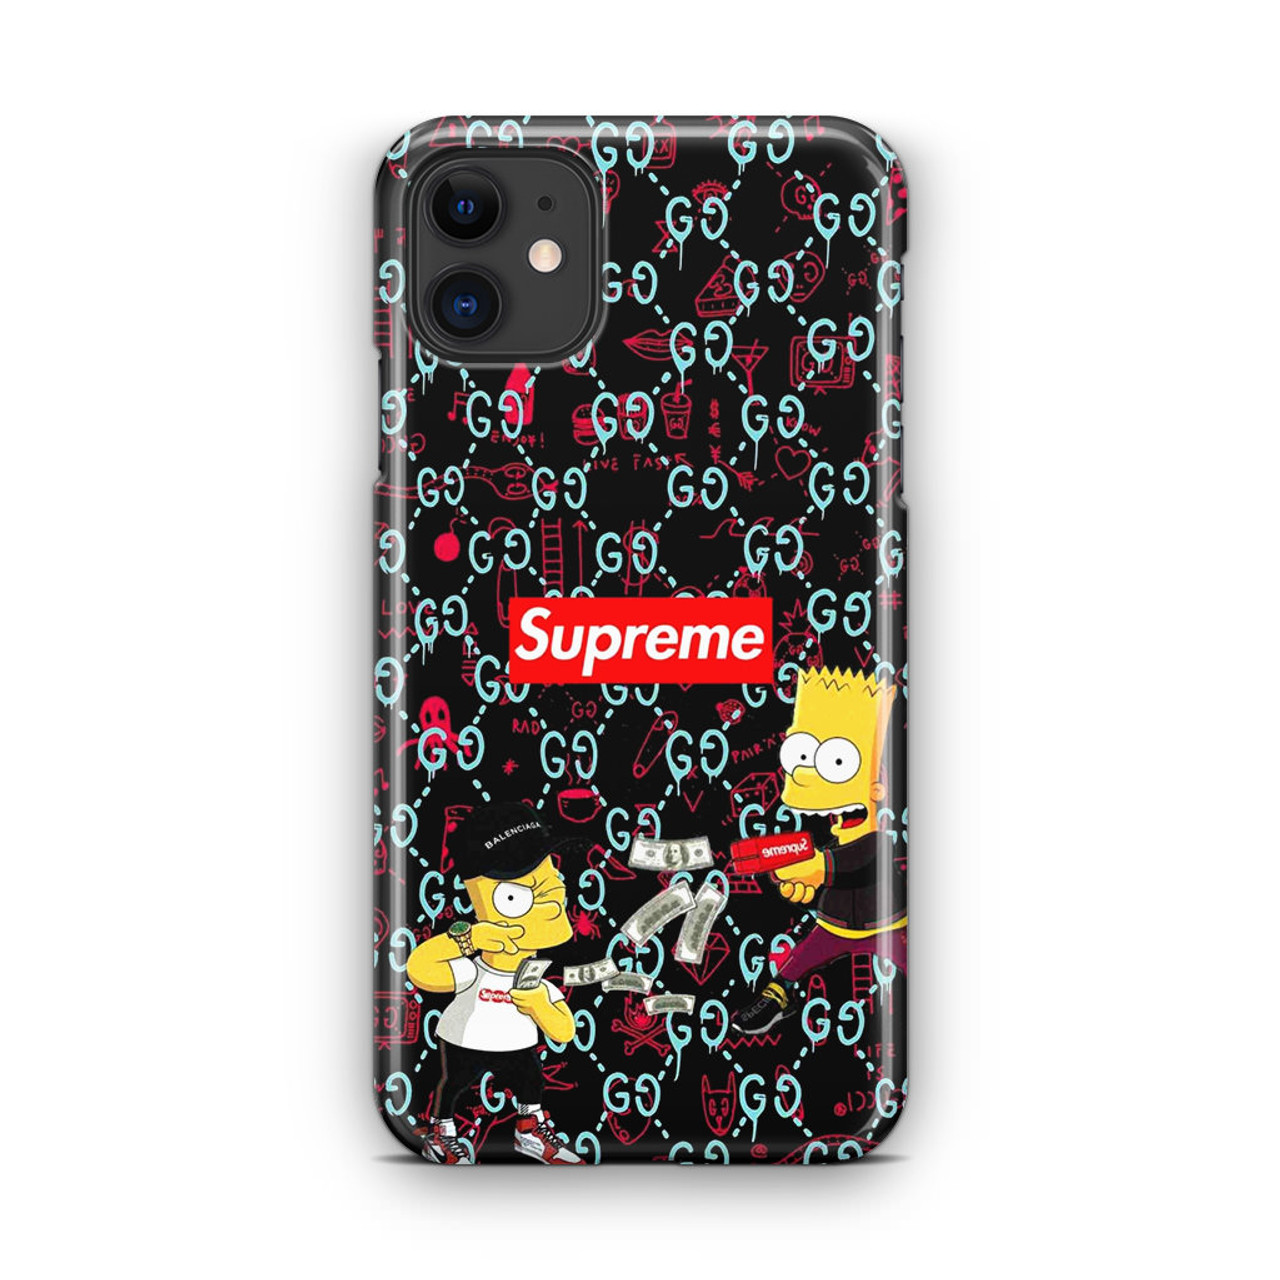 Supreme Camo iPhone 11 Case